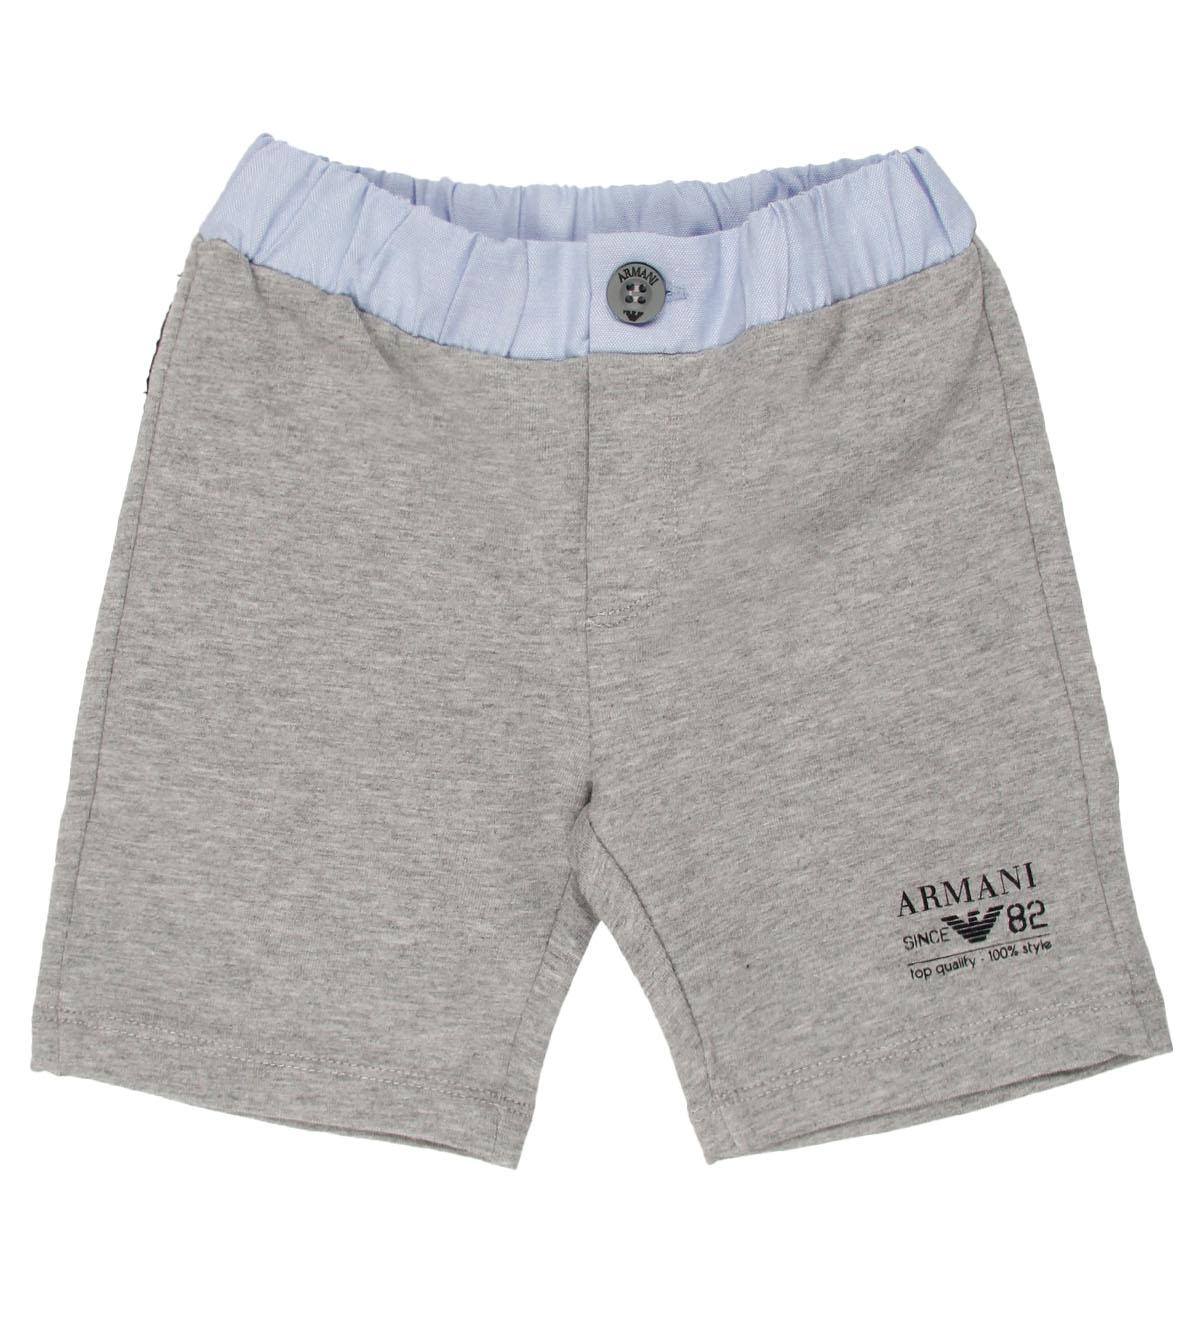 Foto Armani Junior Grey Bermuda Pants-12 Months